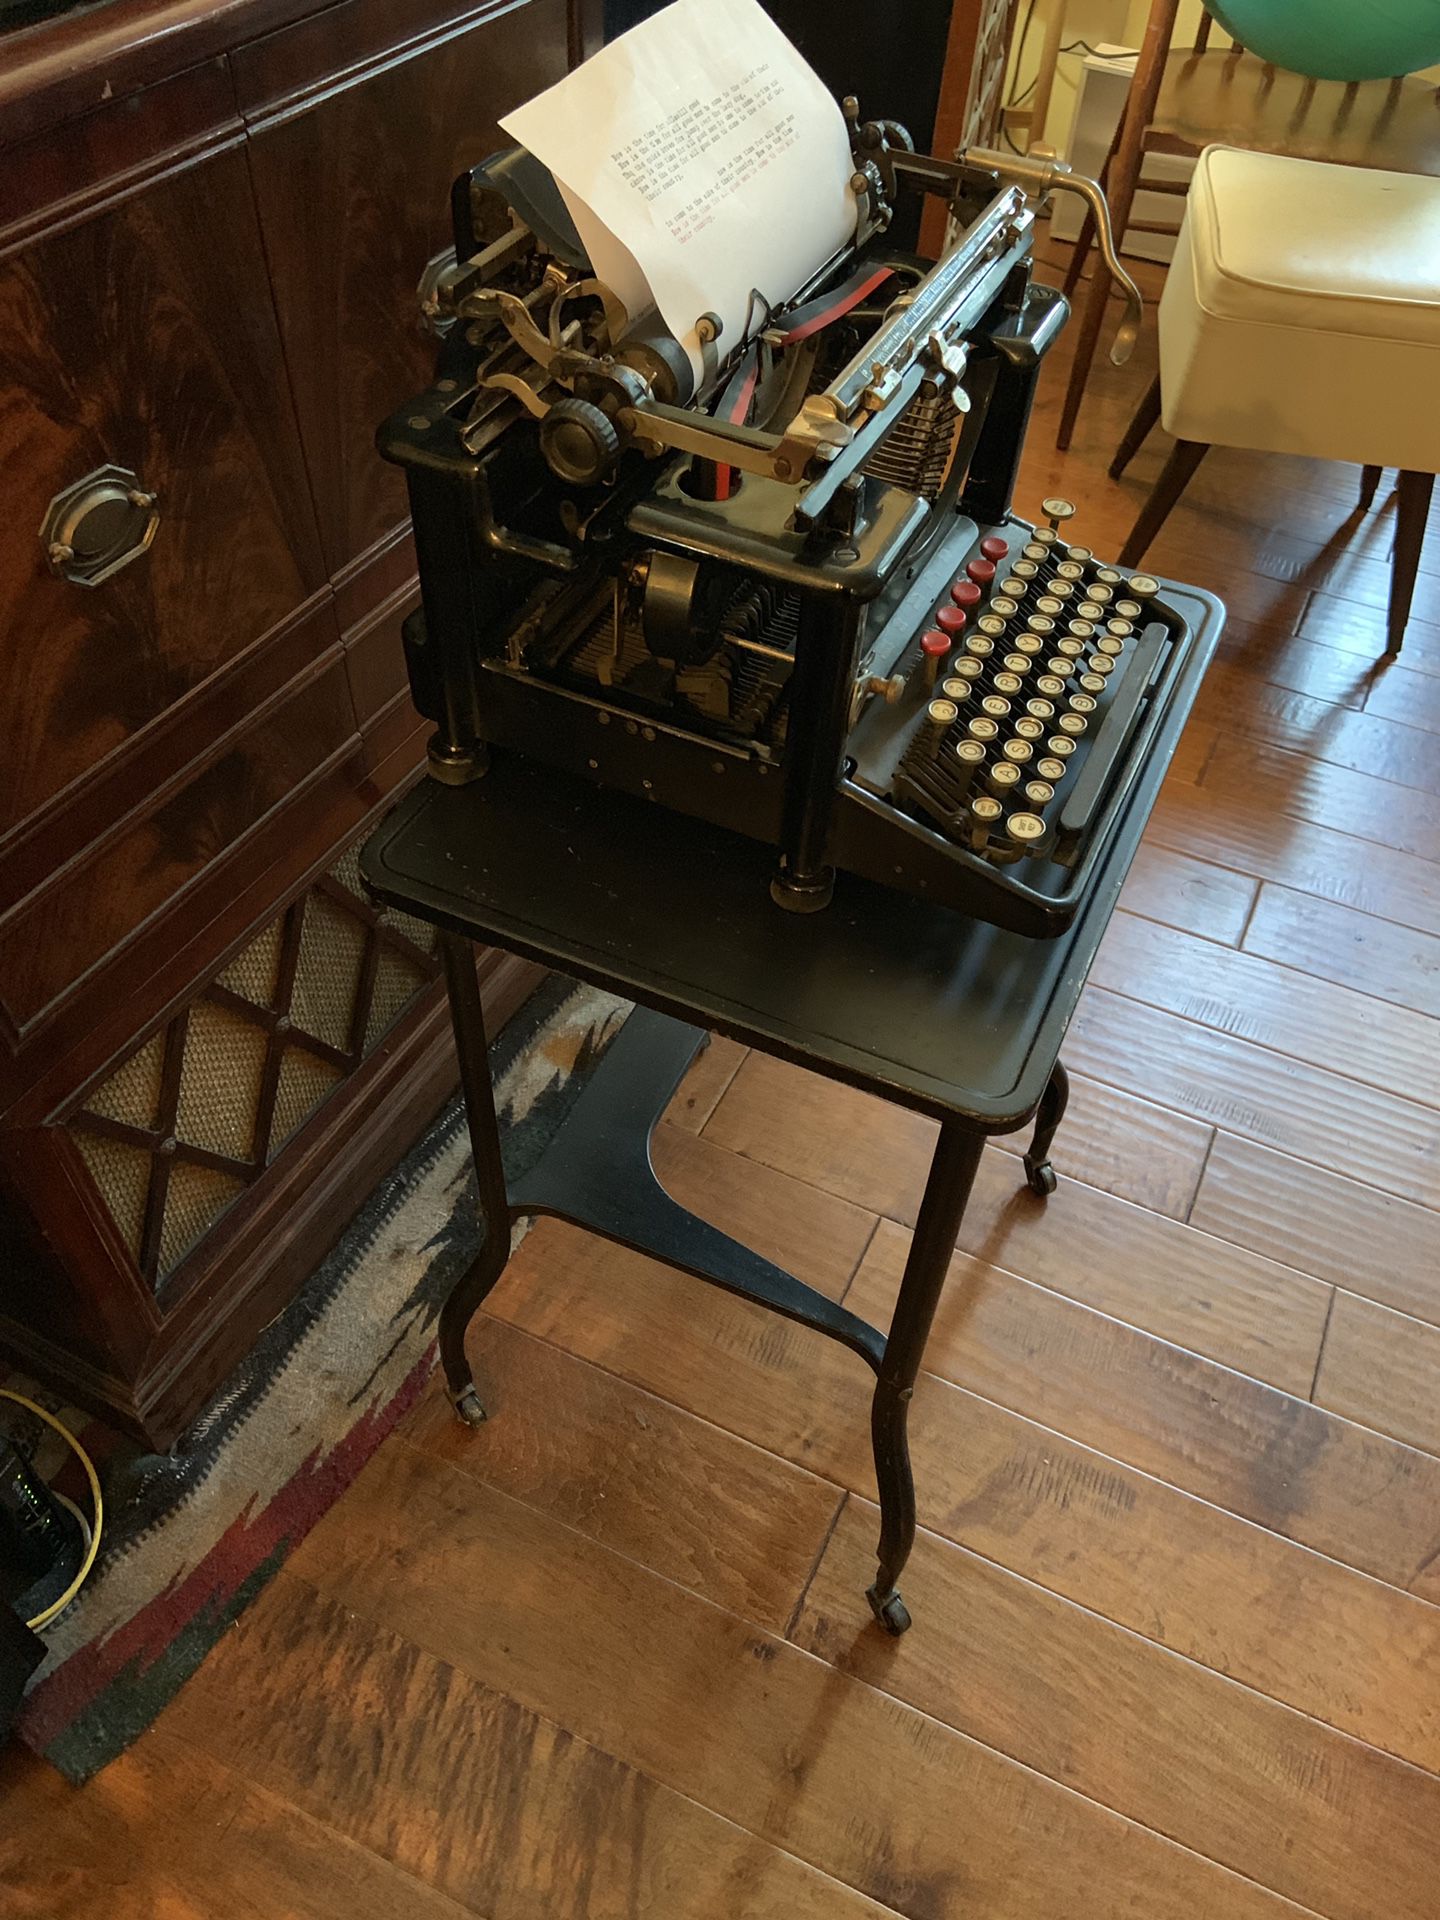 Remington antique typewriter and typewriter stand